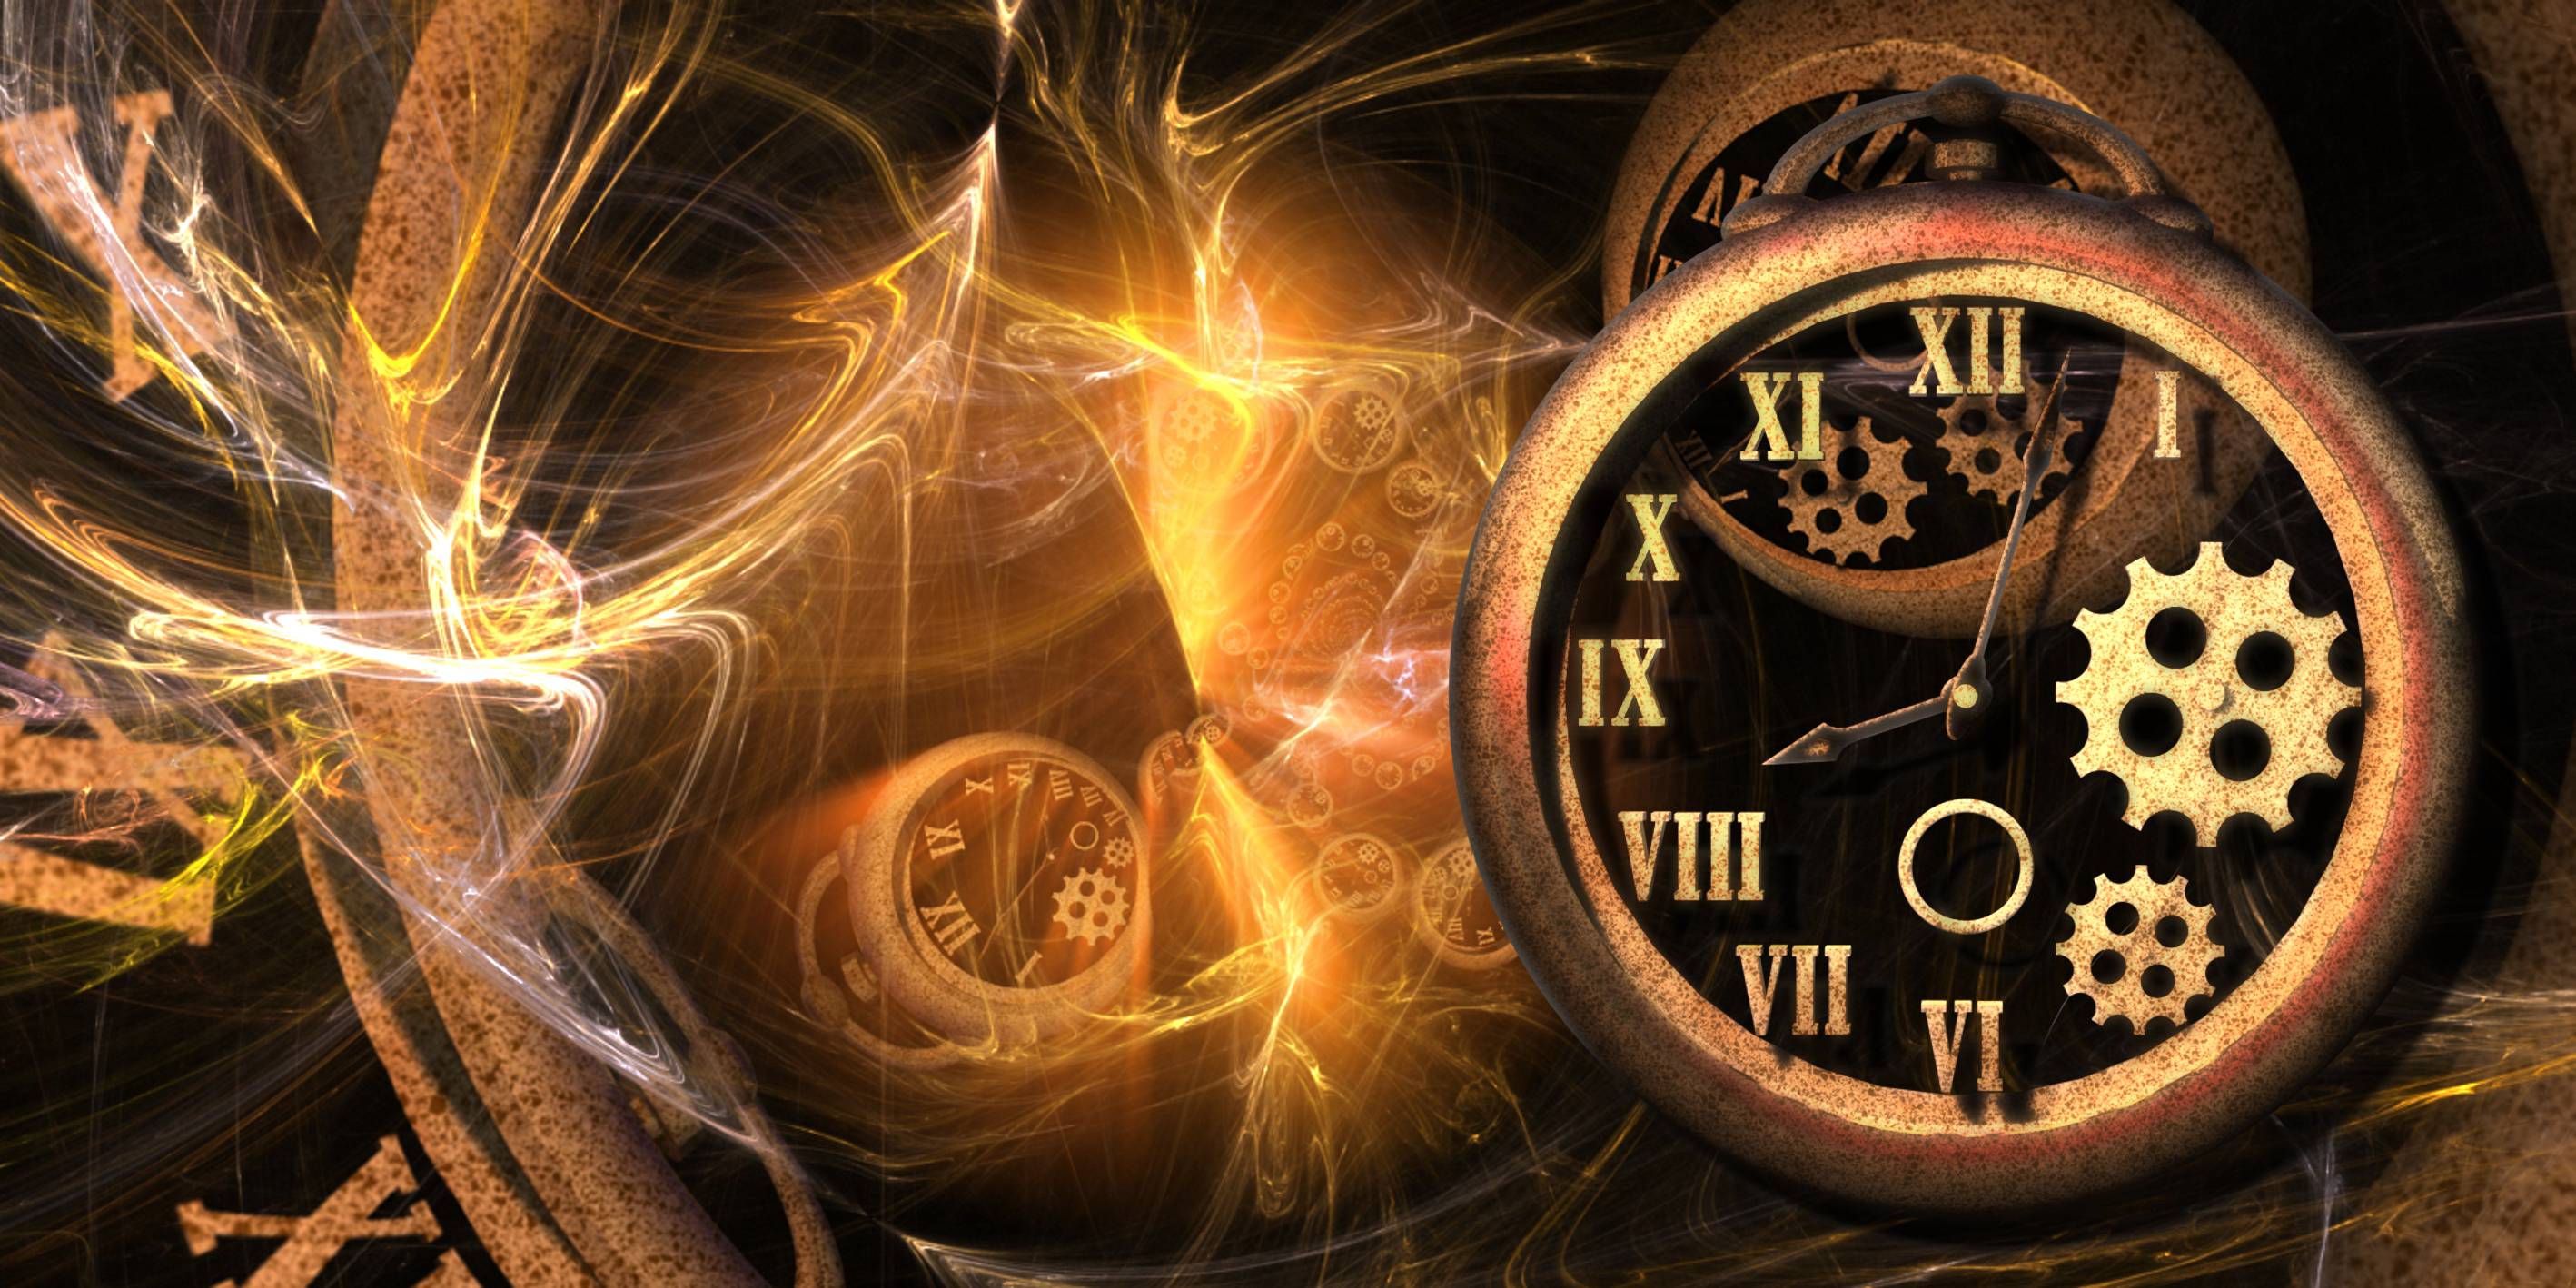 Фон презентации время. Путешествие во времени. Волшебные часы. Мистические часы. Машина времени путешествие во времени.